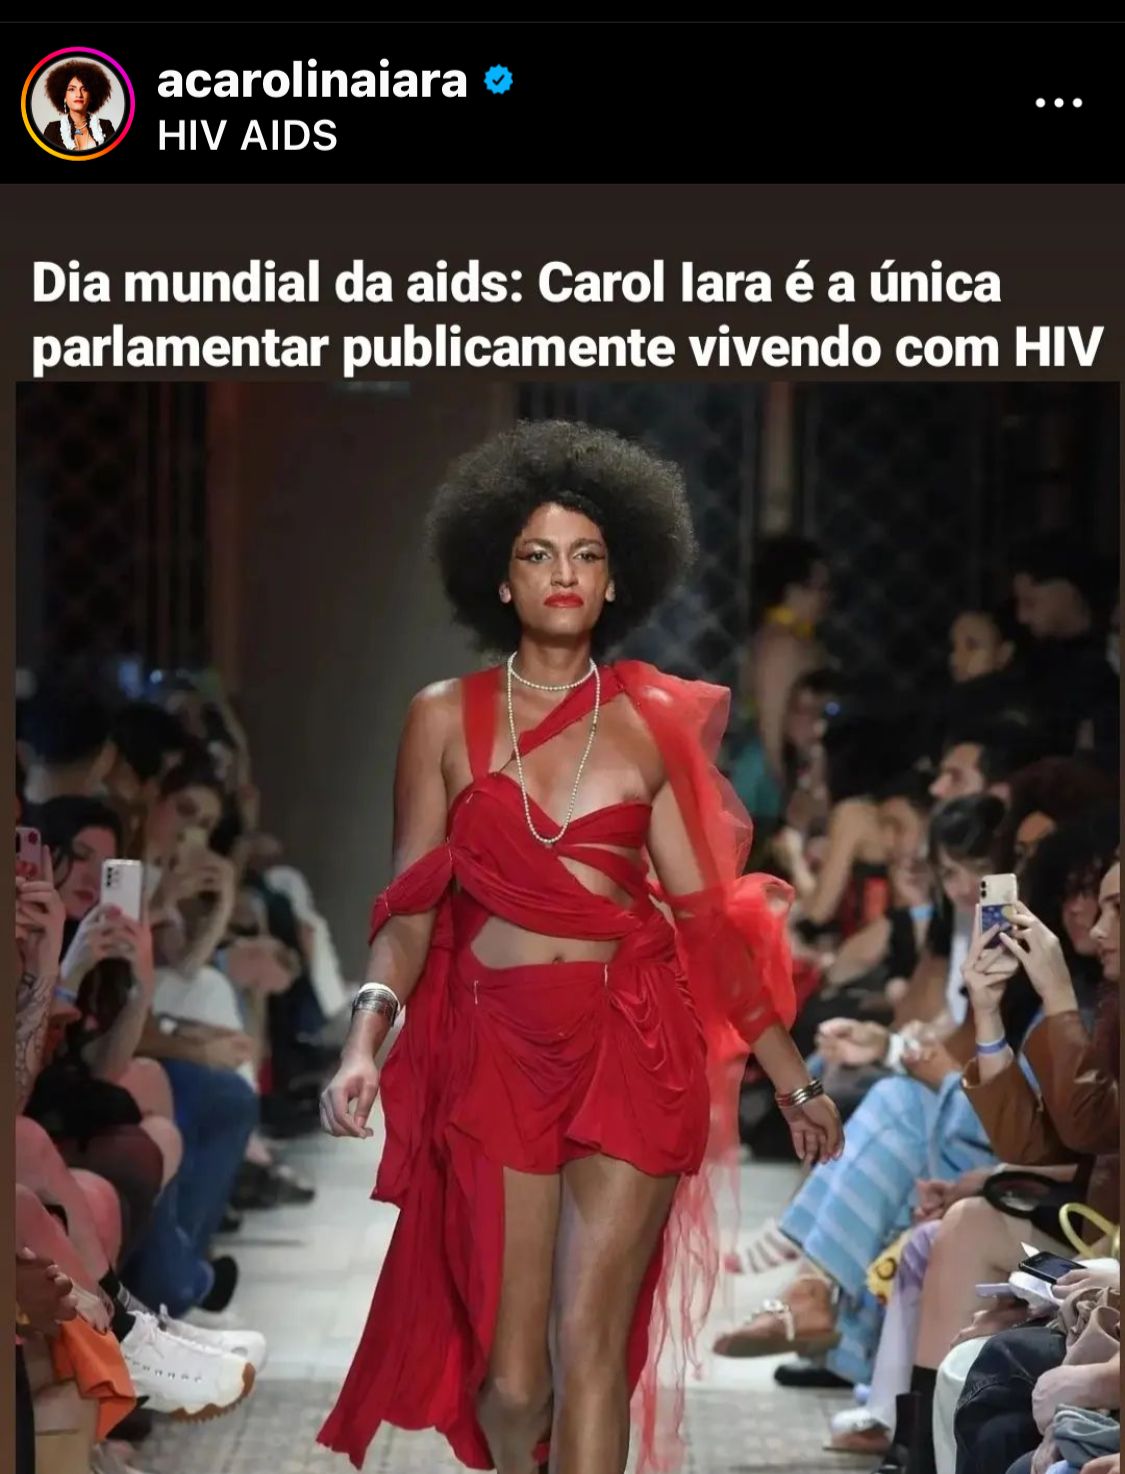 Carolina Iara, primeira co-parlamentar Intersexo, travesti e com sorologia de pessoa vivendo com HIV socialmente aberta, no Brasil.